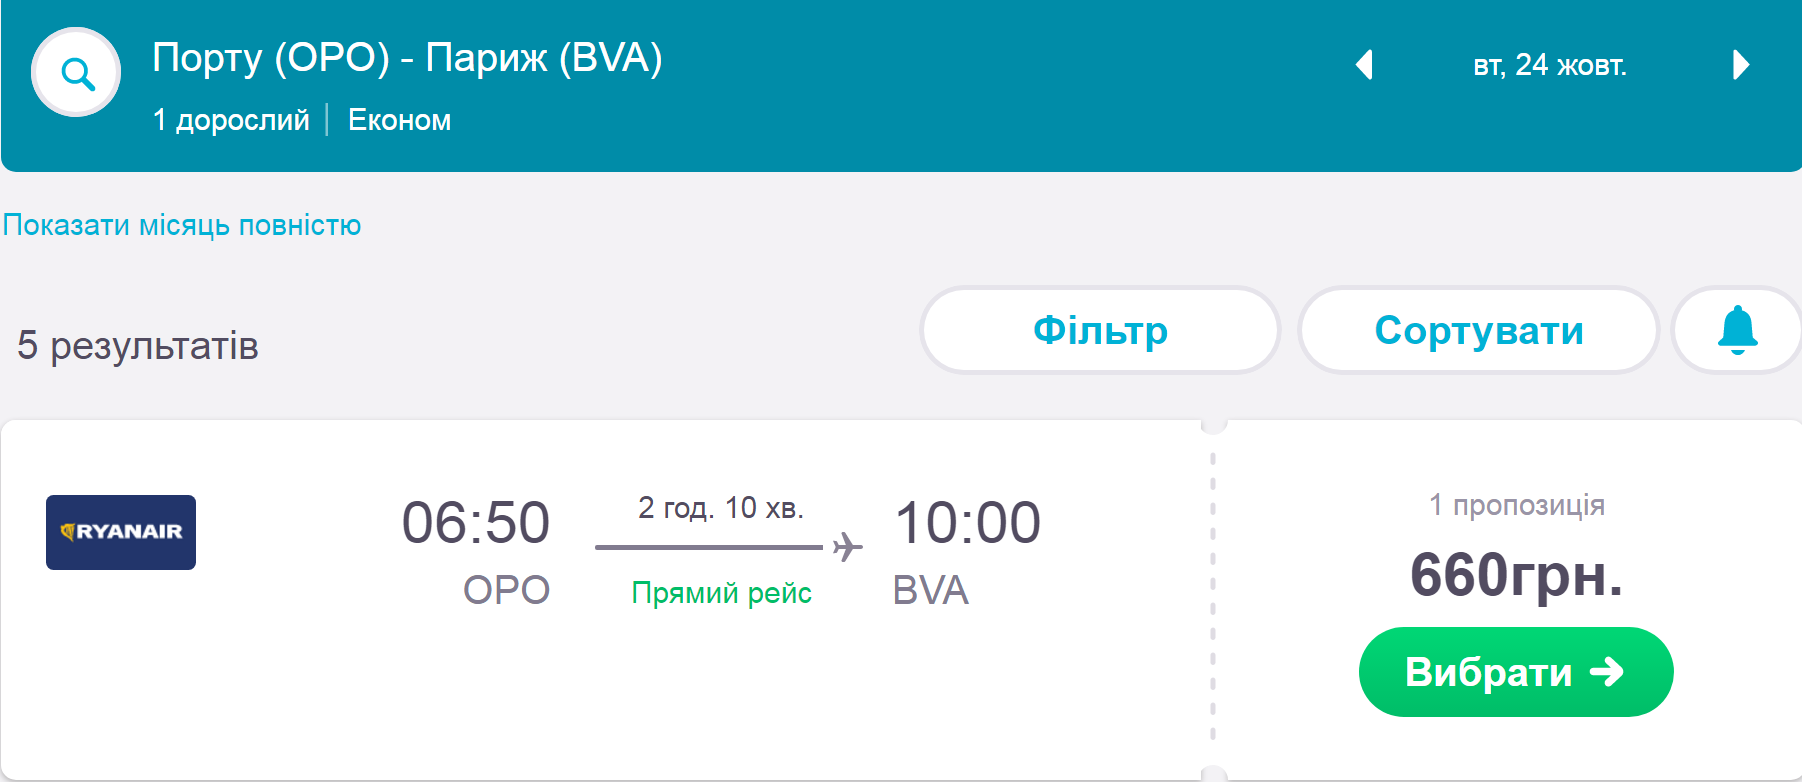 Москва софия москва авиабилеты цена билеты казань симферополь авиабилеты